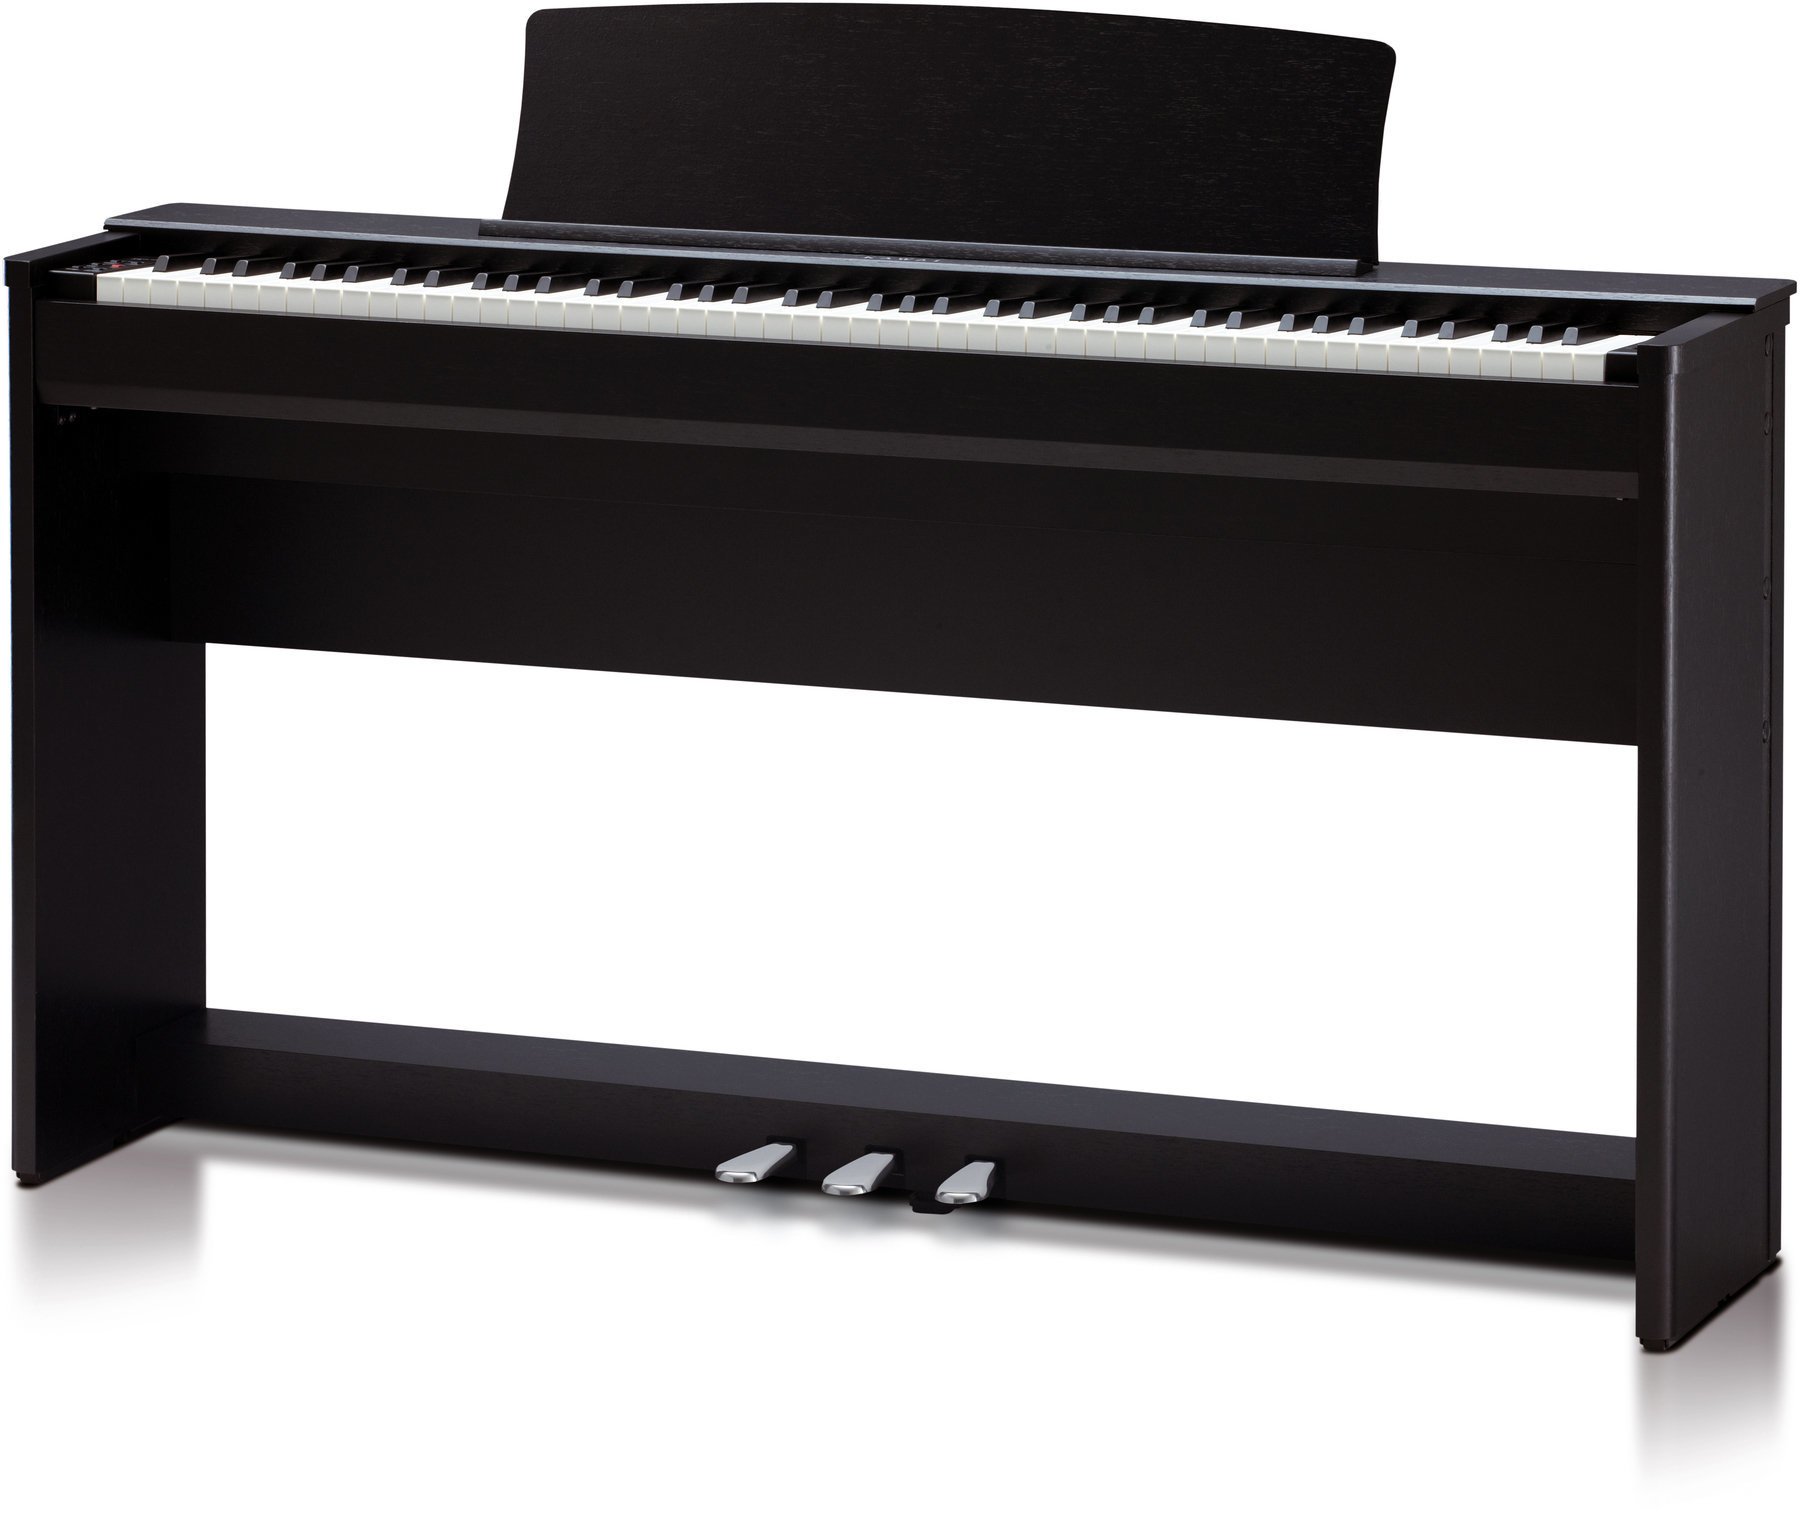 Piano digital Kawai CL36B